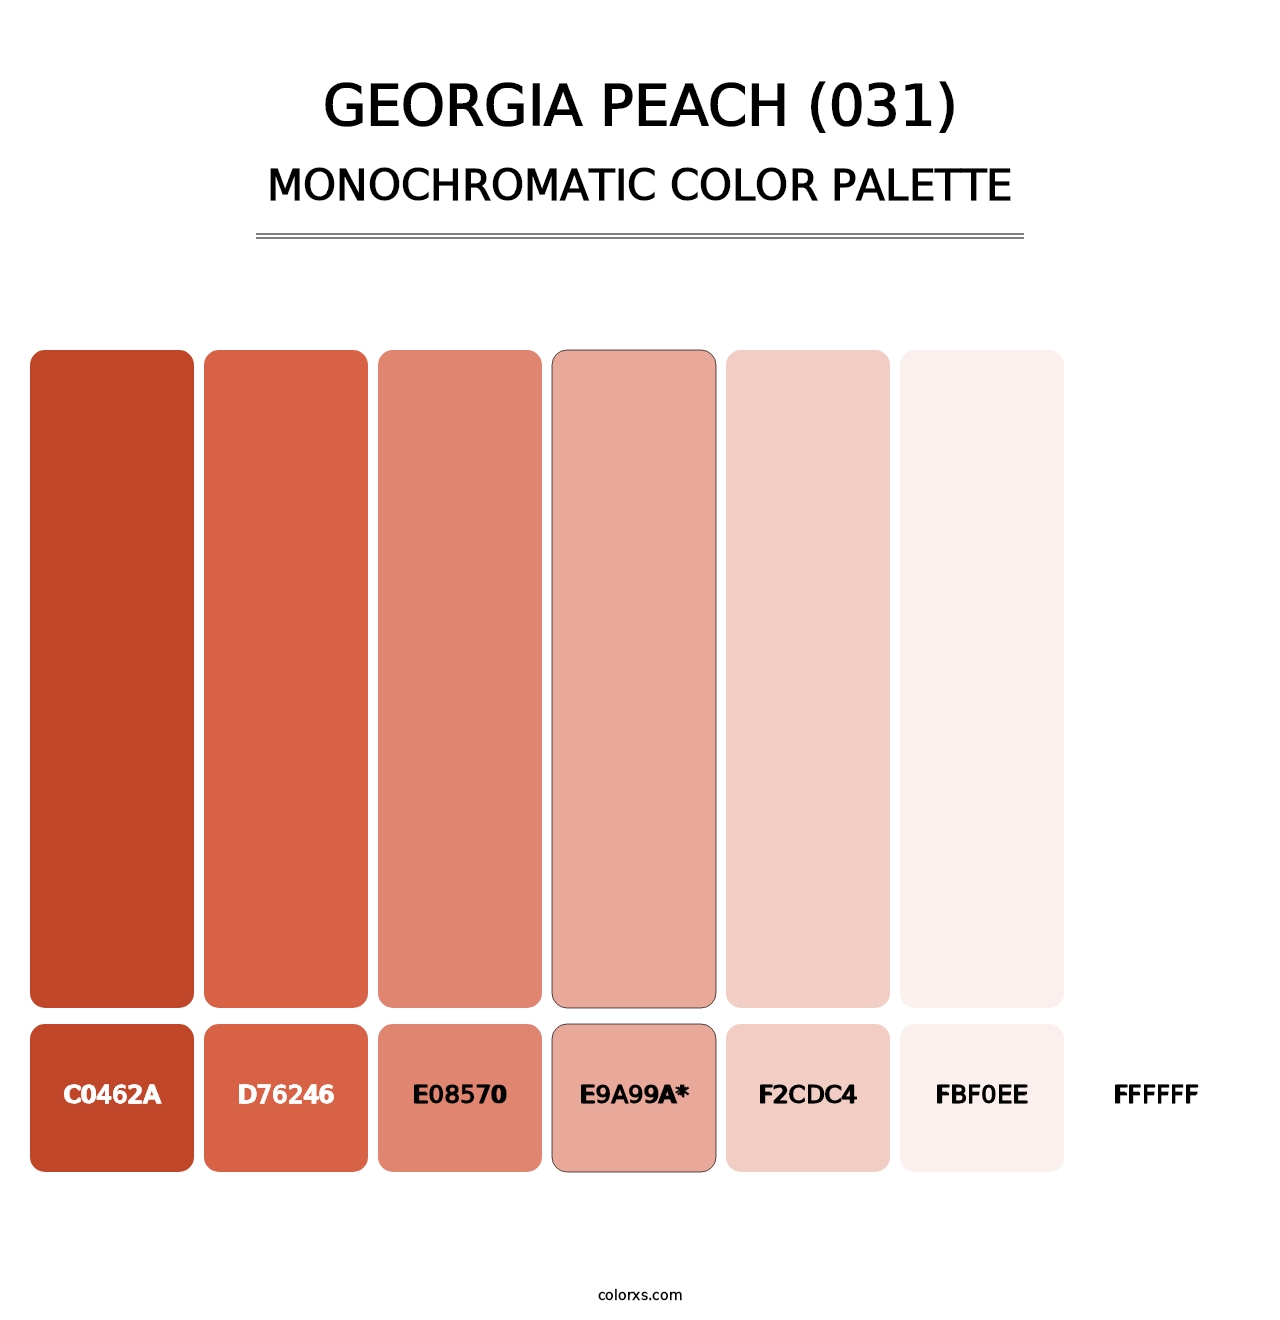 Georgia Peach (031) - Monochromatic Color Palette